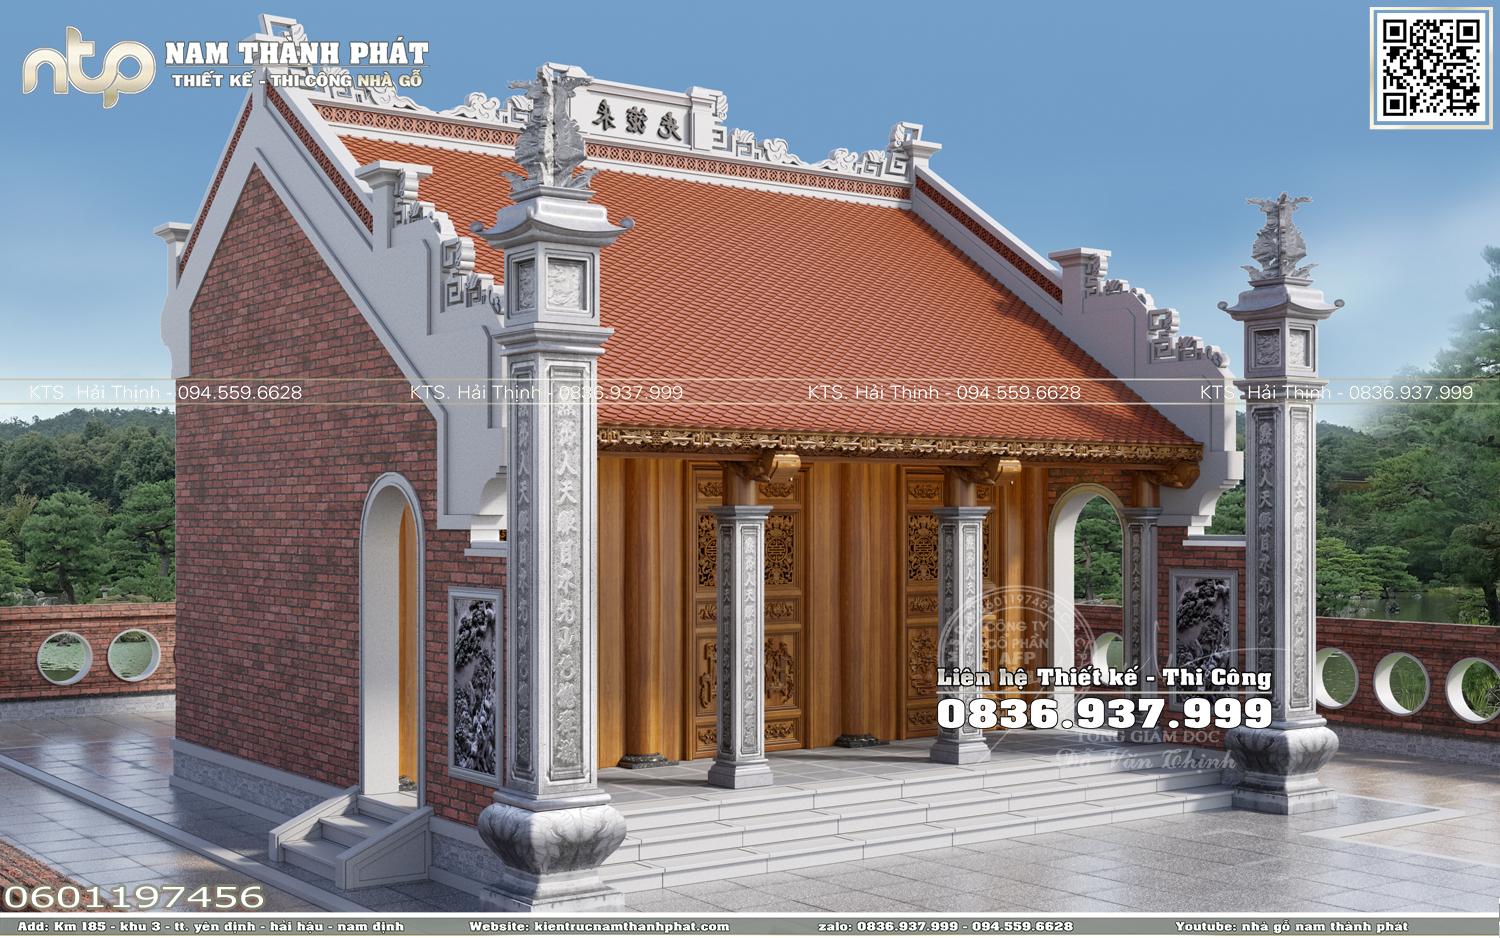 Nhà thờ gỗ 3 gian có hậu cung gỗ Lim Lào - Mẫu nhà gỗ 3 gian truyền thống đẹp